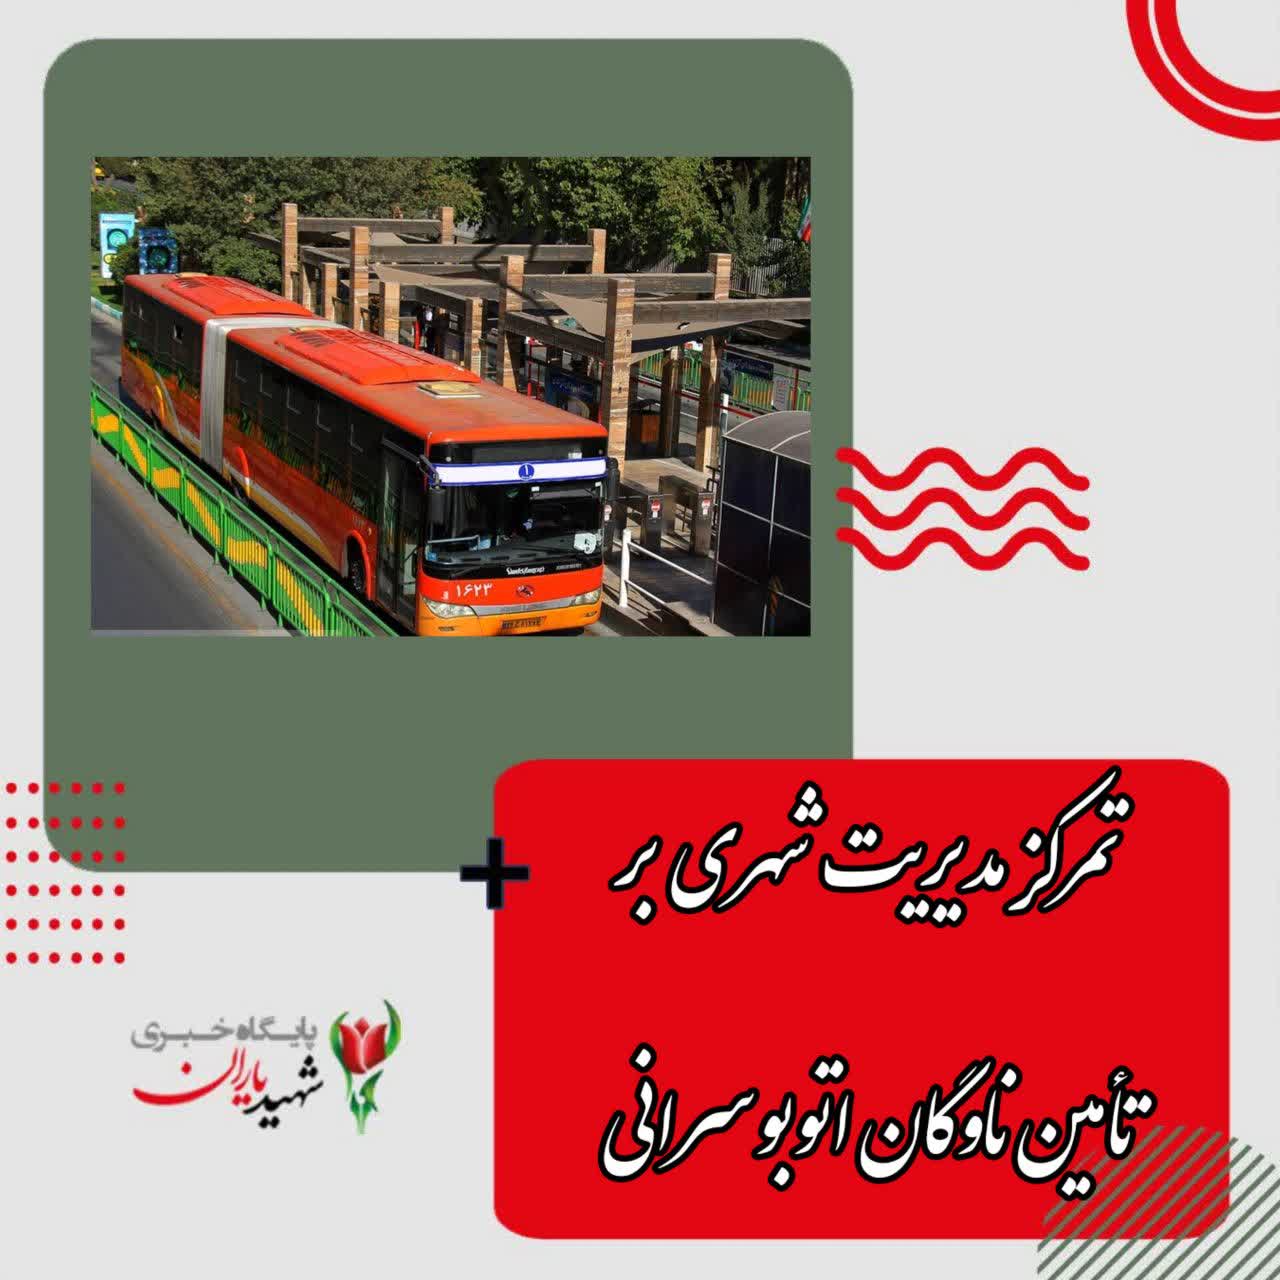 مدیرعامل شرکت واحد اتوبوسرانی اصفهان و حومه عنوان کرد: